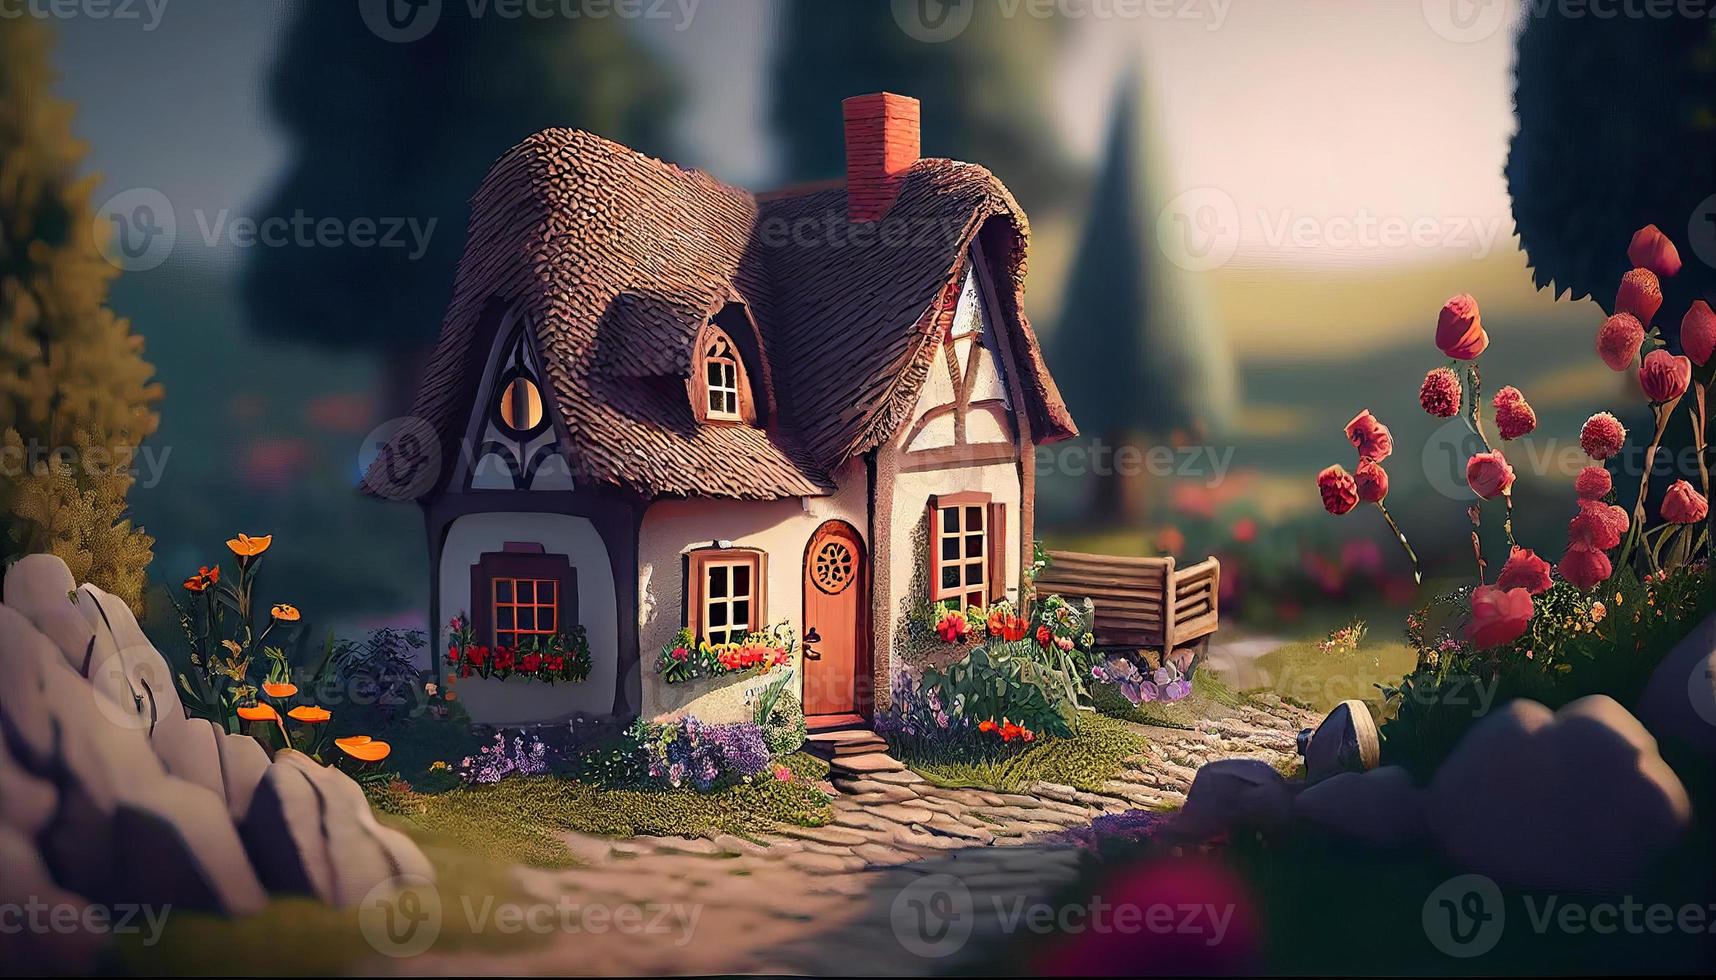 petit mignonne confortable confort maison village pays maison bâtiment et herbe jardin paysage scène vue illustration photo